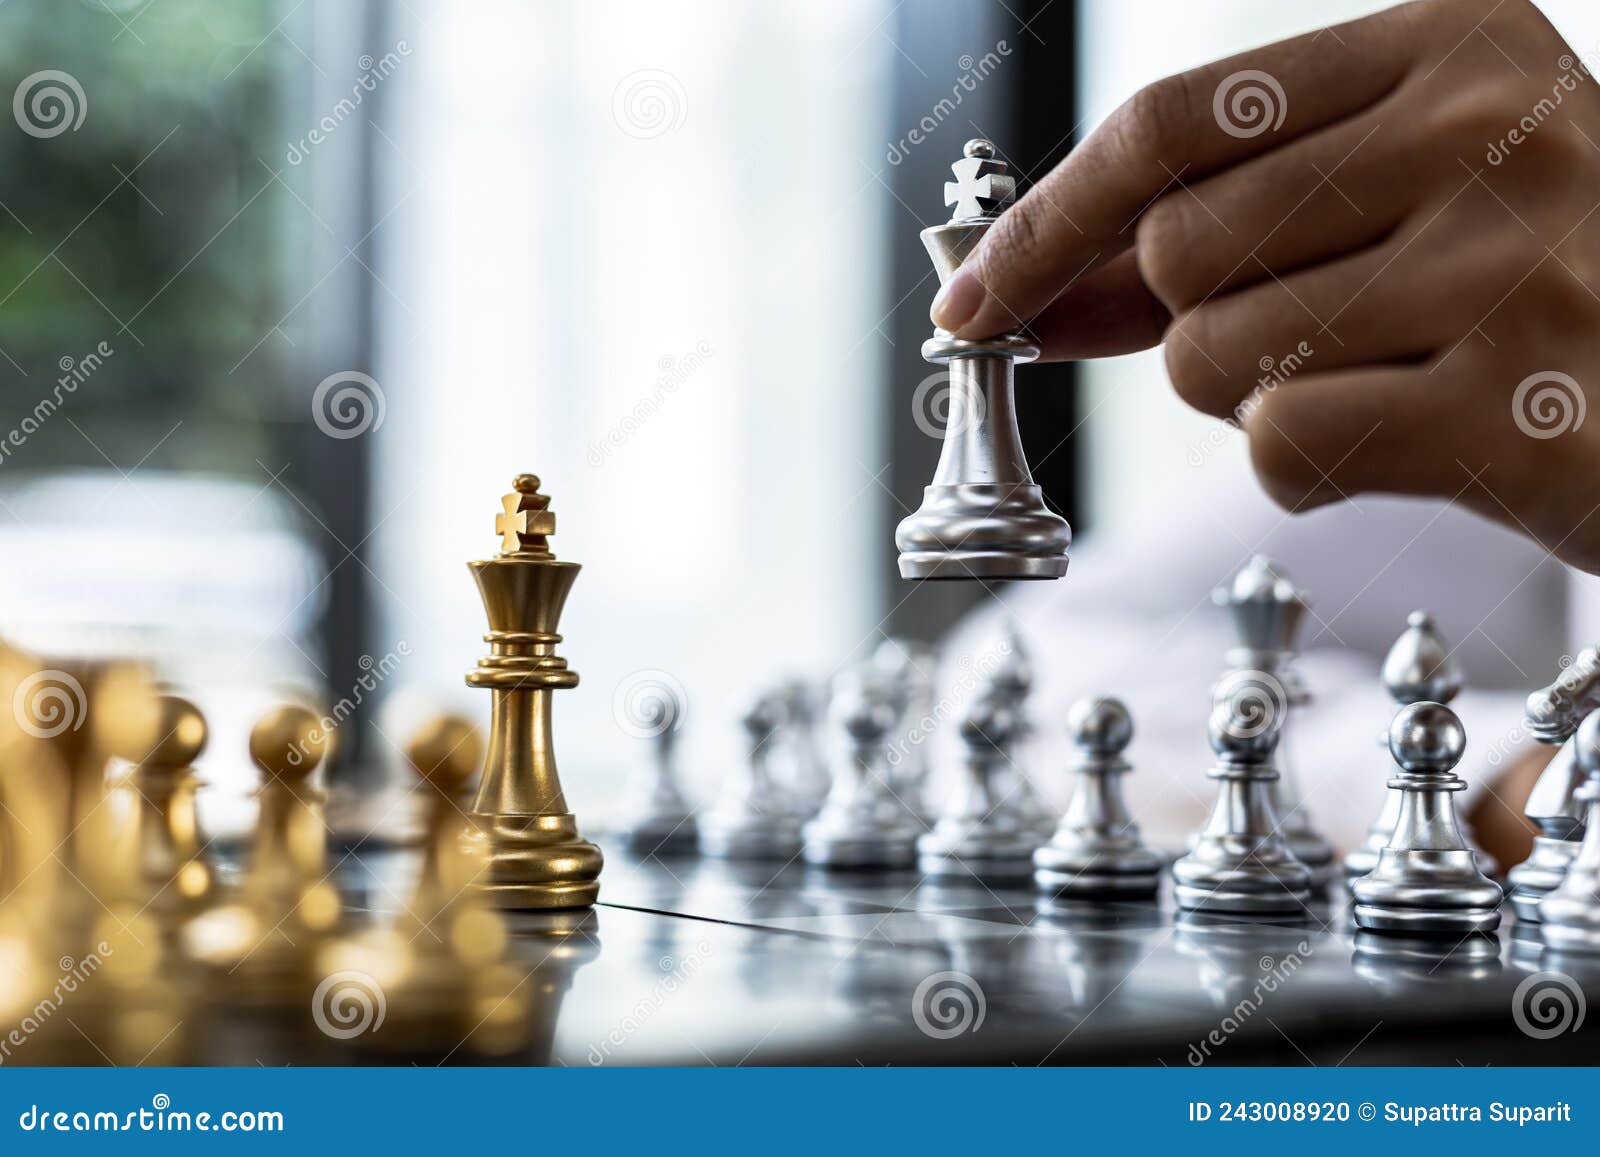 Pessoa jogando xadrez, imagem conceitual de uma mulher de negócios